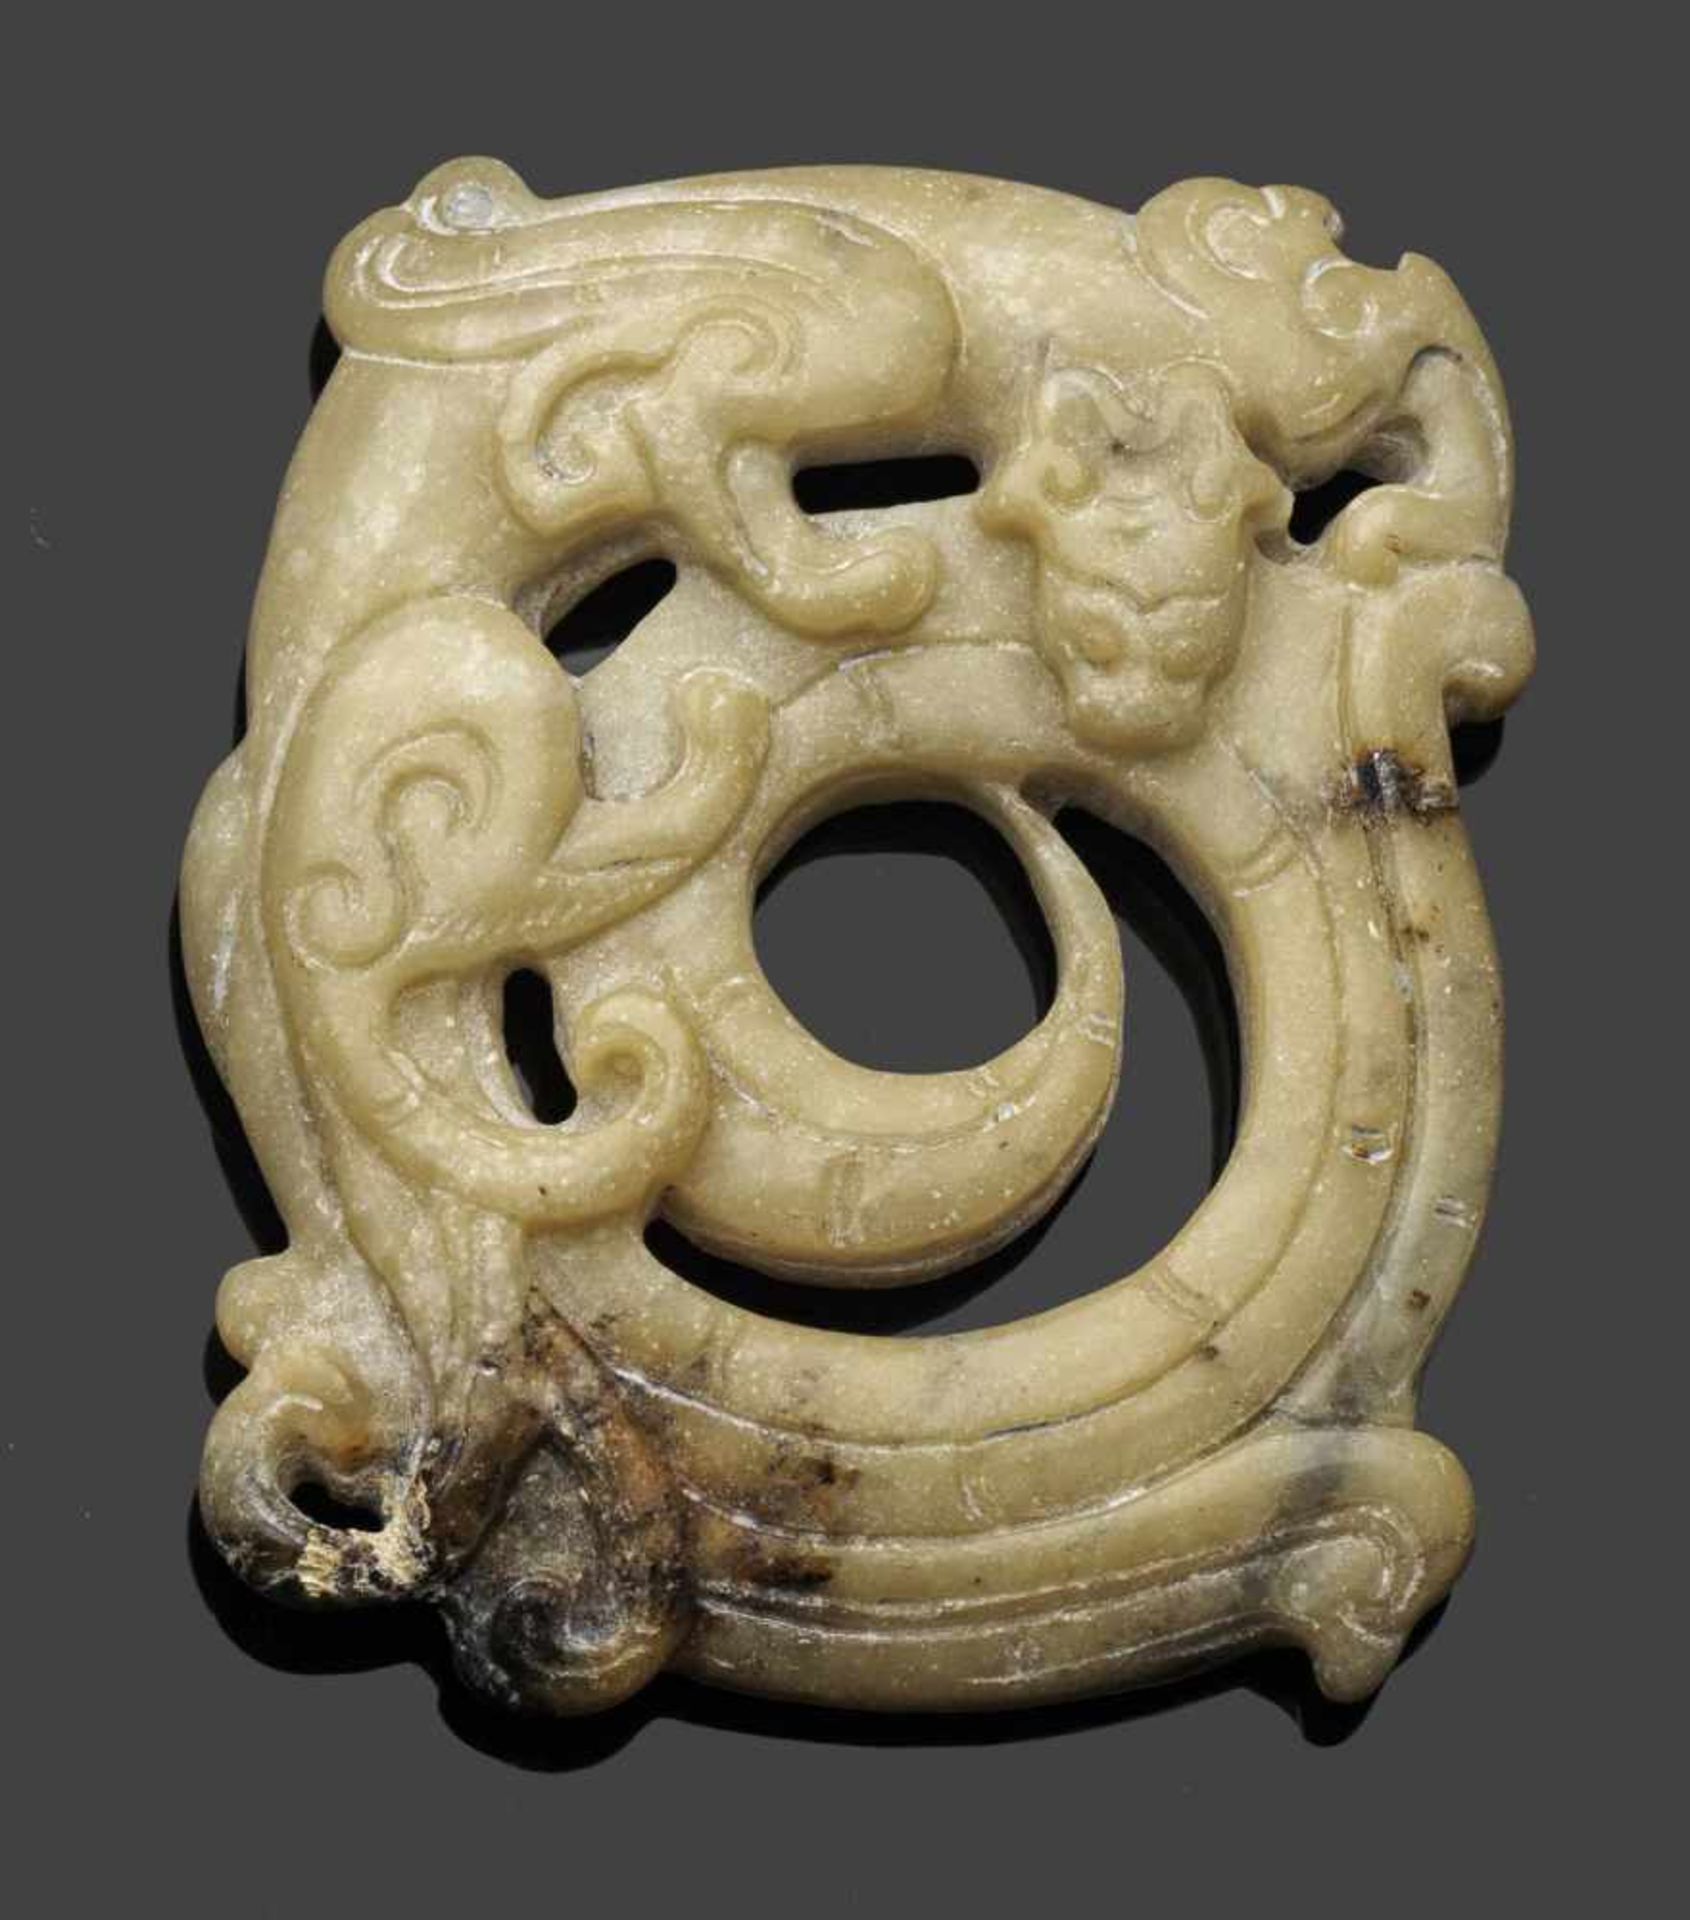 Anhänger in Drachenform im archaischen StilWeiß-gelbliche opake Jade mit karamellfarbenen bis